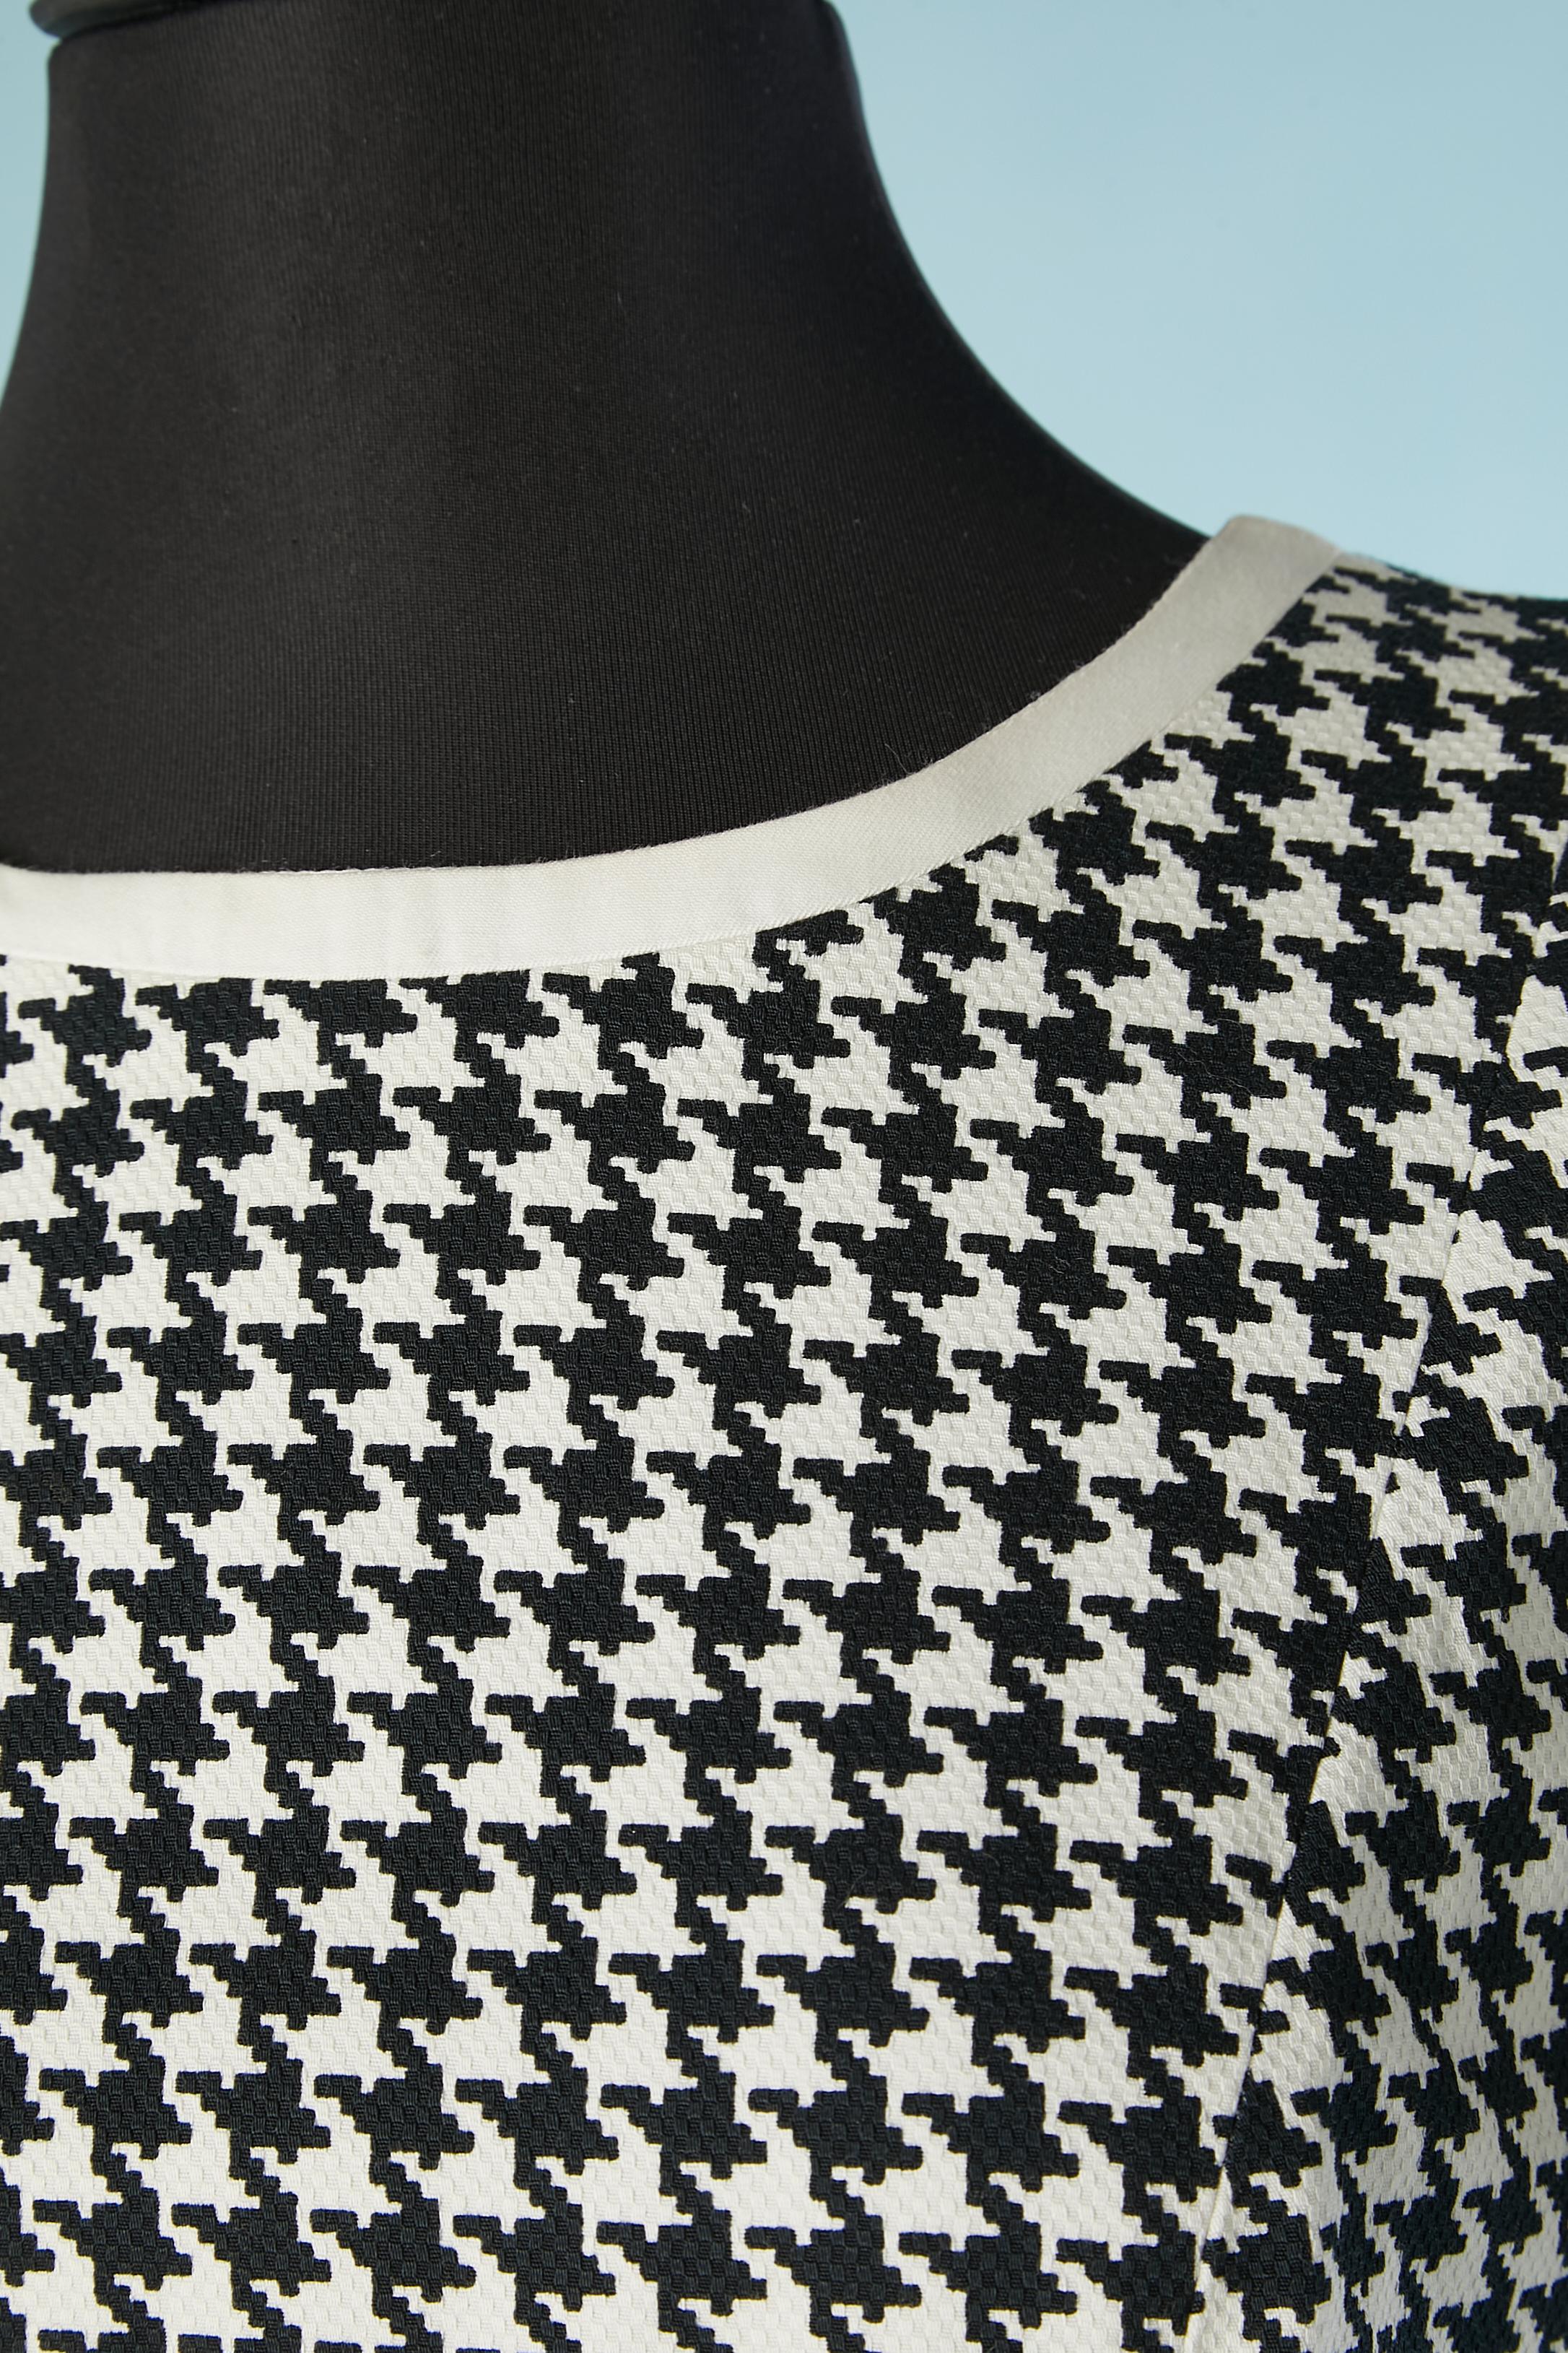 Schwarz-weißes Kleid mit Hahnentrittmuster. Stoff:100% Baumwolle. Innenfutter: 100% Polyester. Reißverschluss in der hinteren Mitte. Paspel am Kragen und am Ärmelrand. Schlitz in der Seite hinten, Länge: 26 cm